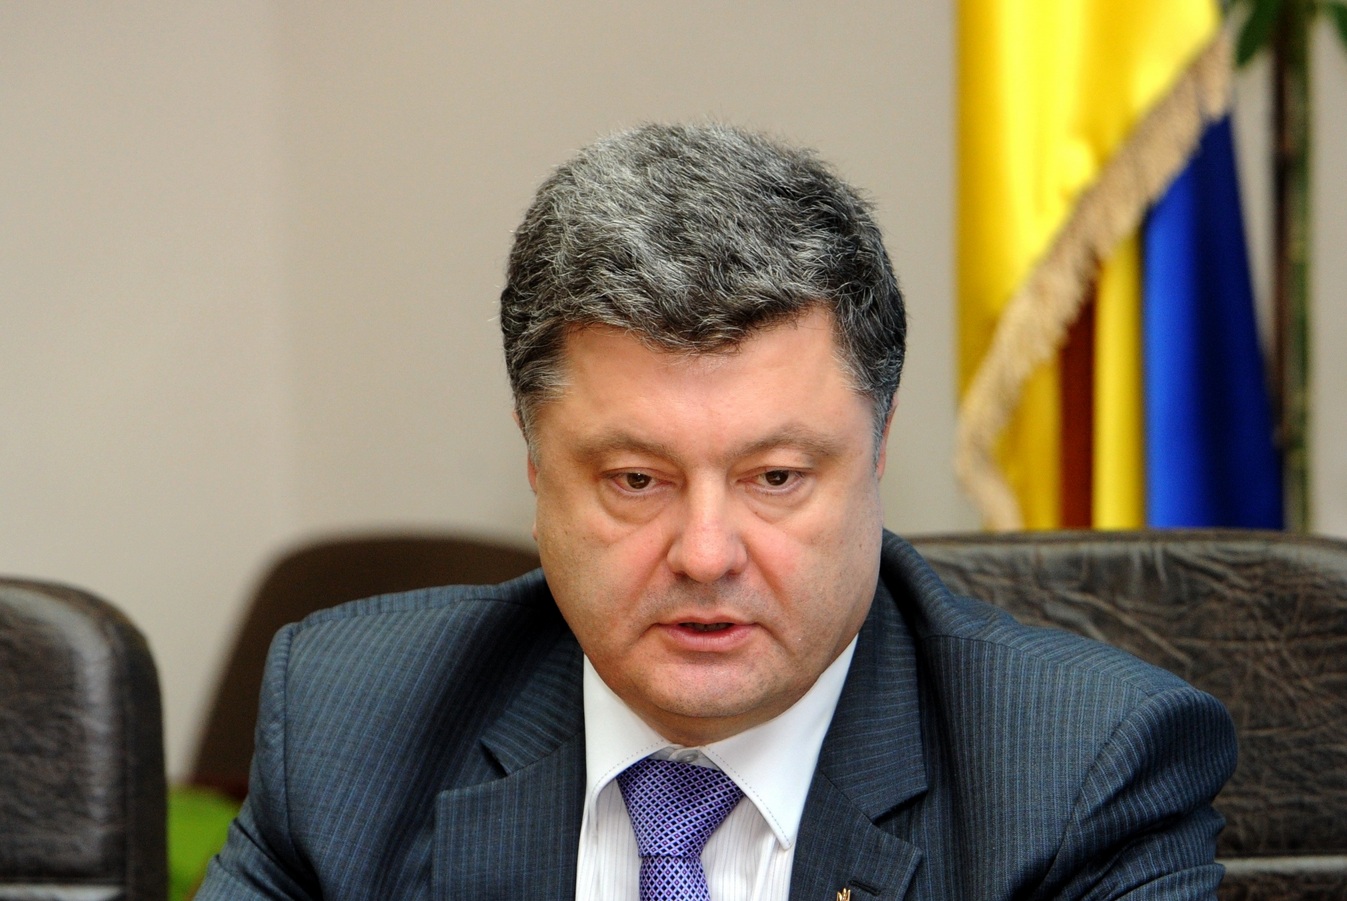 Подробности нового мирного плана Порошенко по урегулированию украинского кризиса